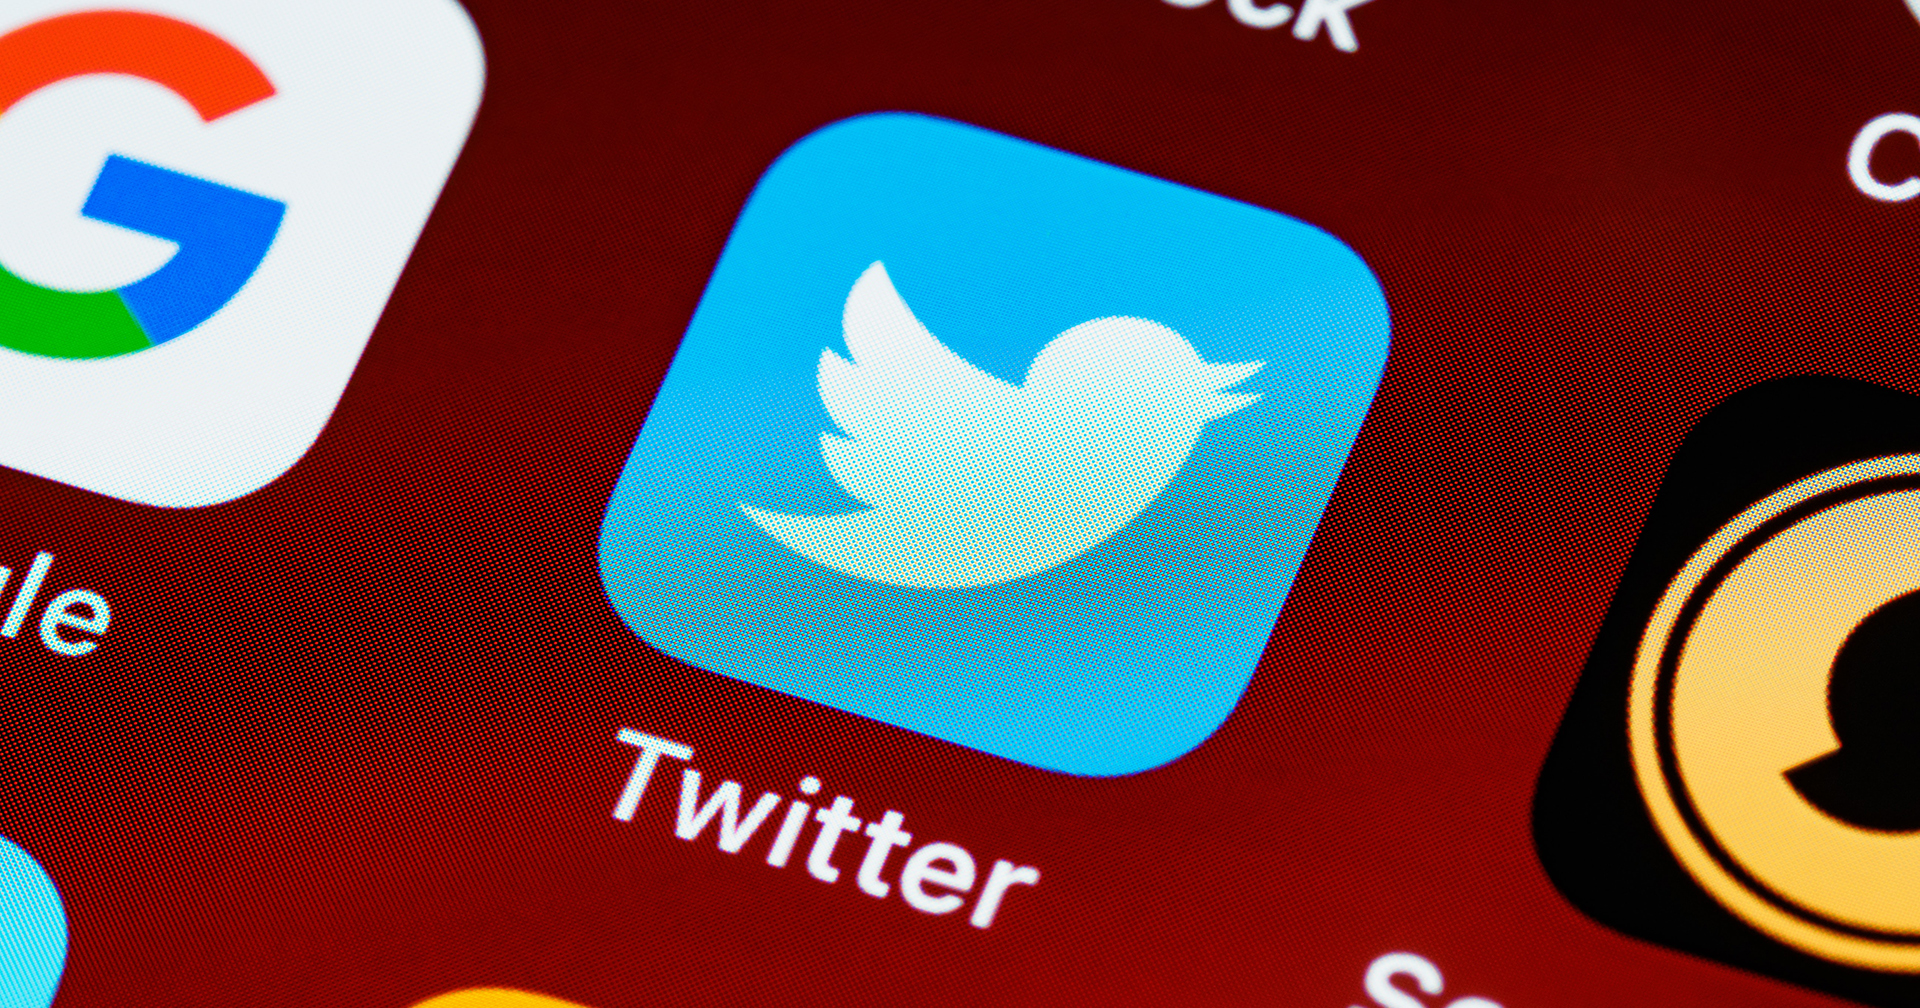 Twitter ลดวิศวกรทำงานเต็มเวลาเหลือน้อยกว่า 550 คน